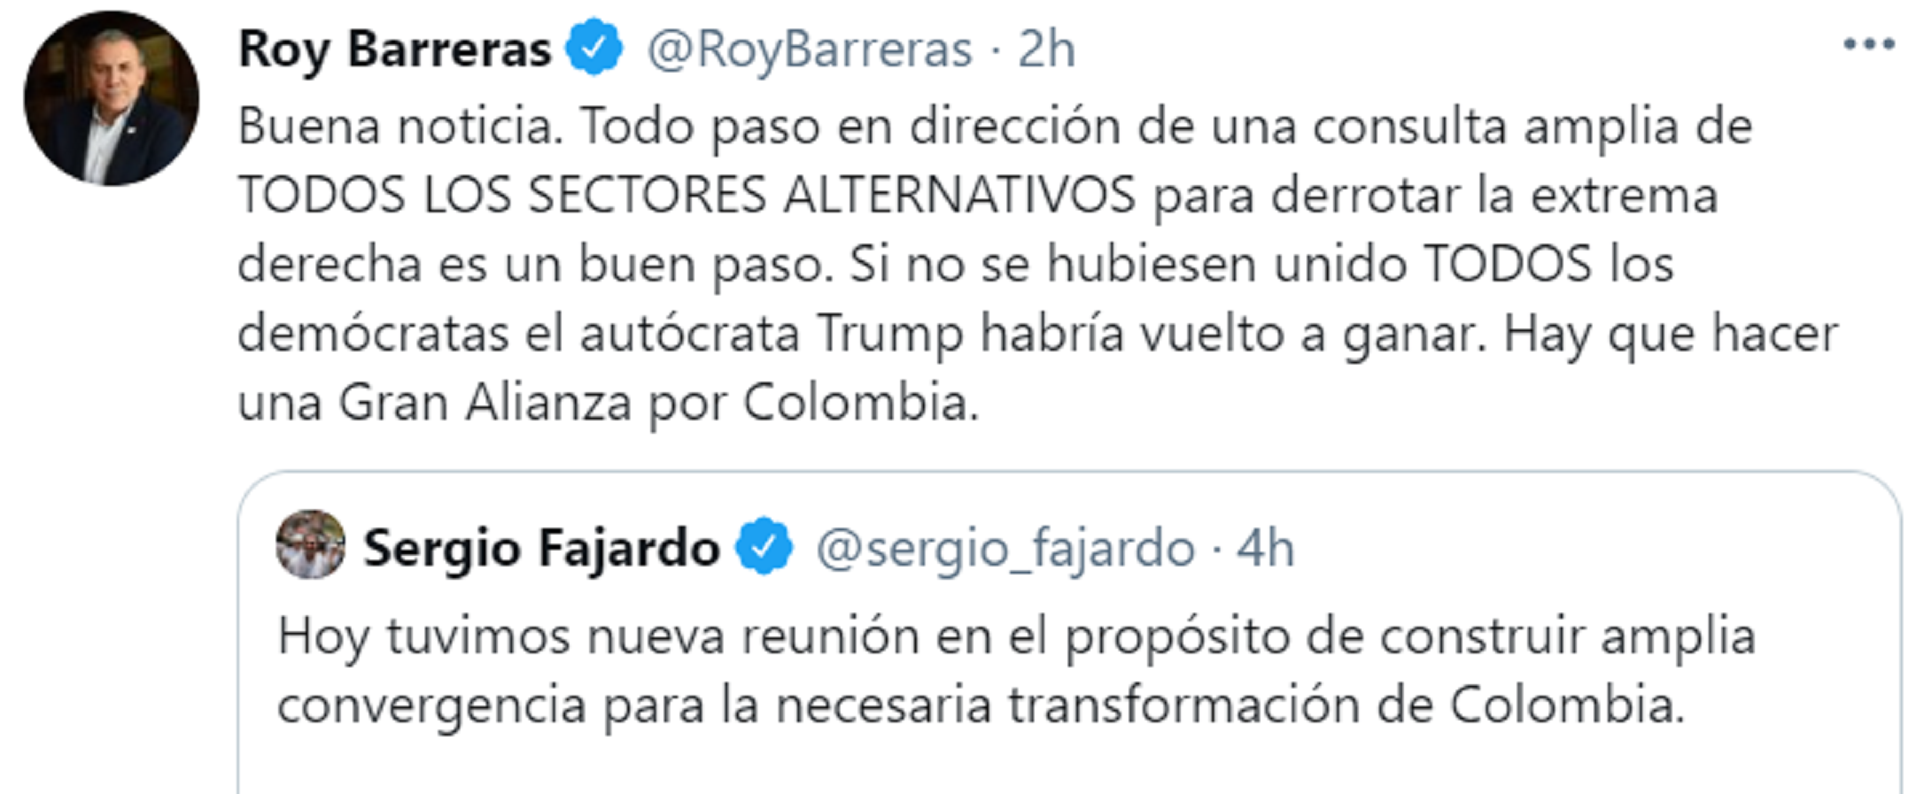 Roy Barreras también manifestó su opinión frente a la convergencia política de centro para las elecciones presidenciales del 2022. Foto: Twitter Roy Barreras.